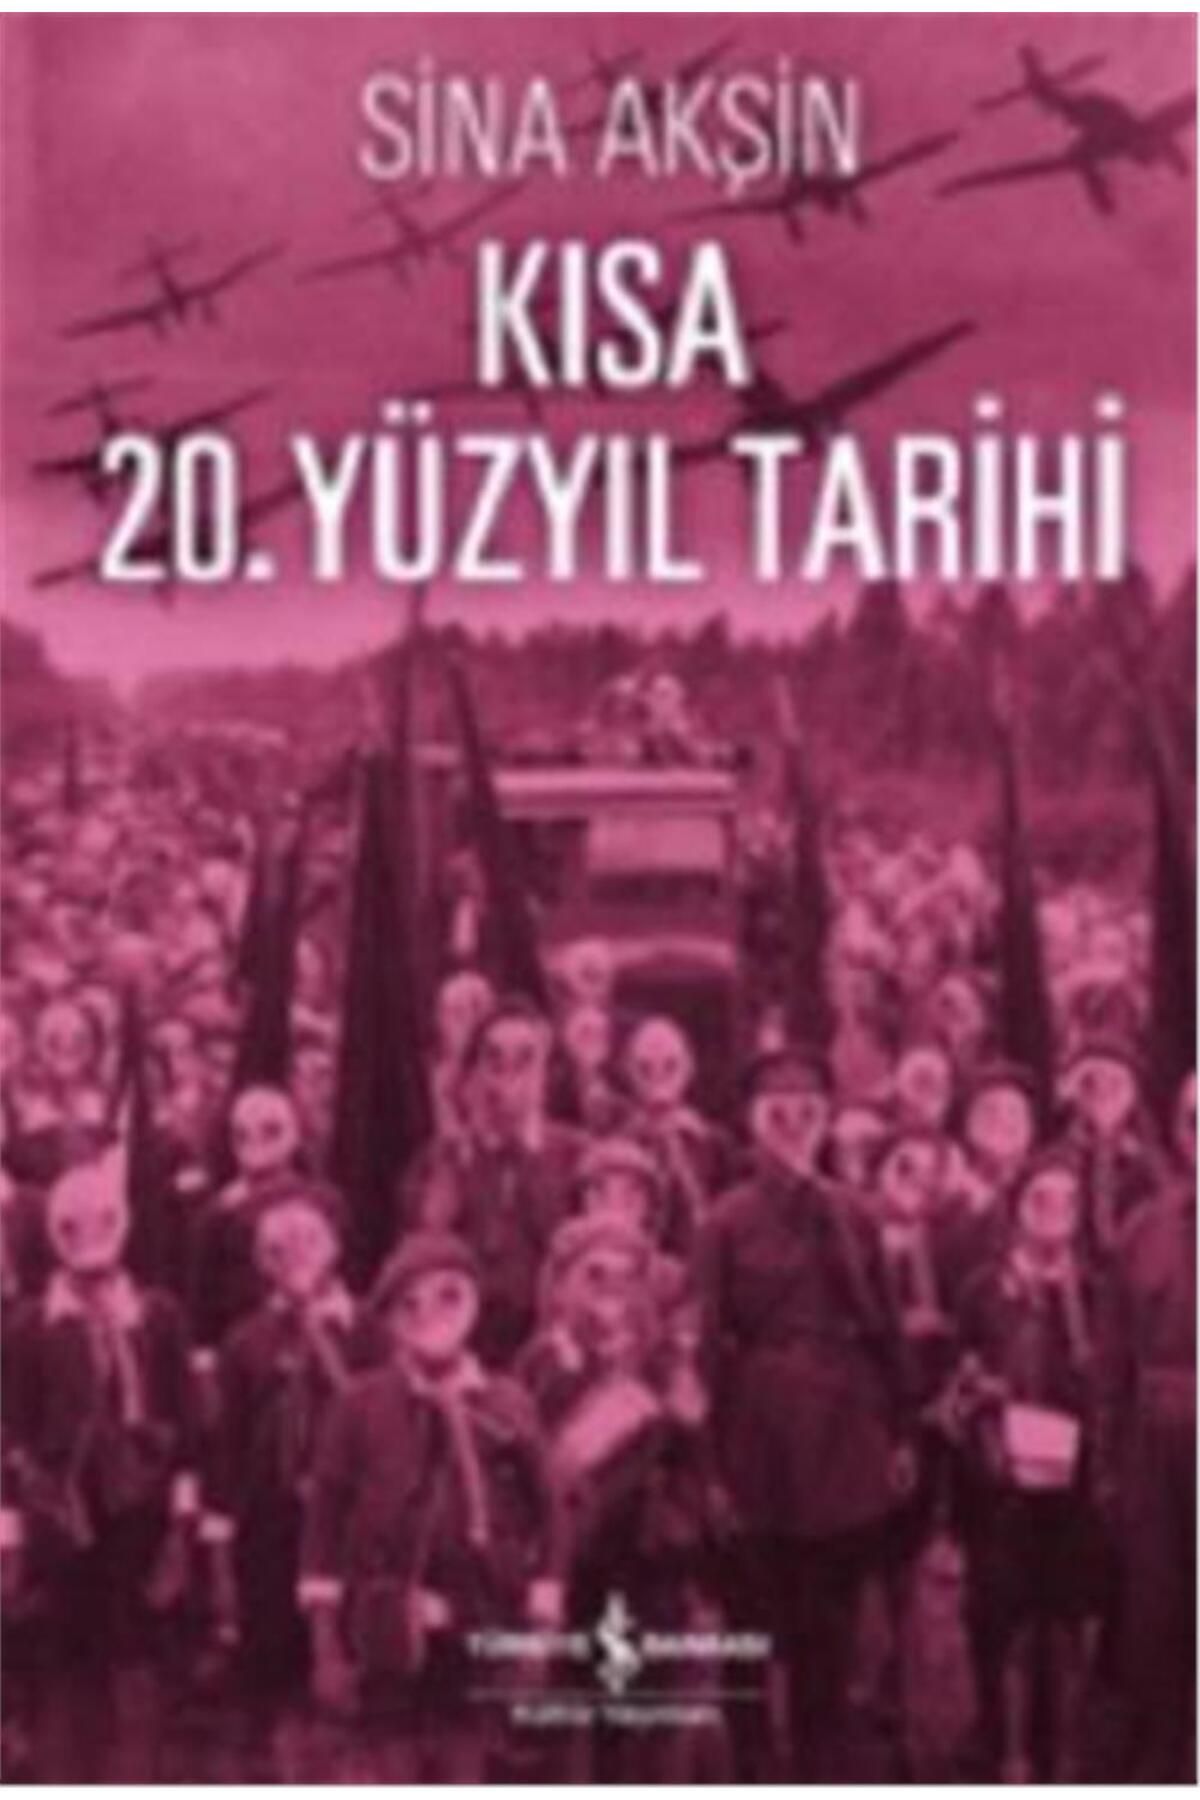 Türkiye İş Bankası Kültür Yayınları Kısa 20. Yüzyıl Tarihi